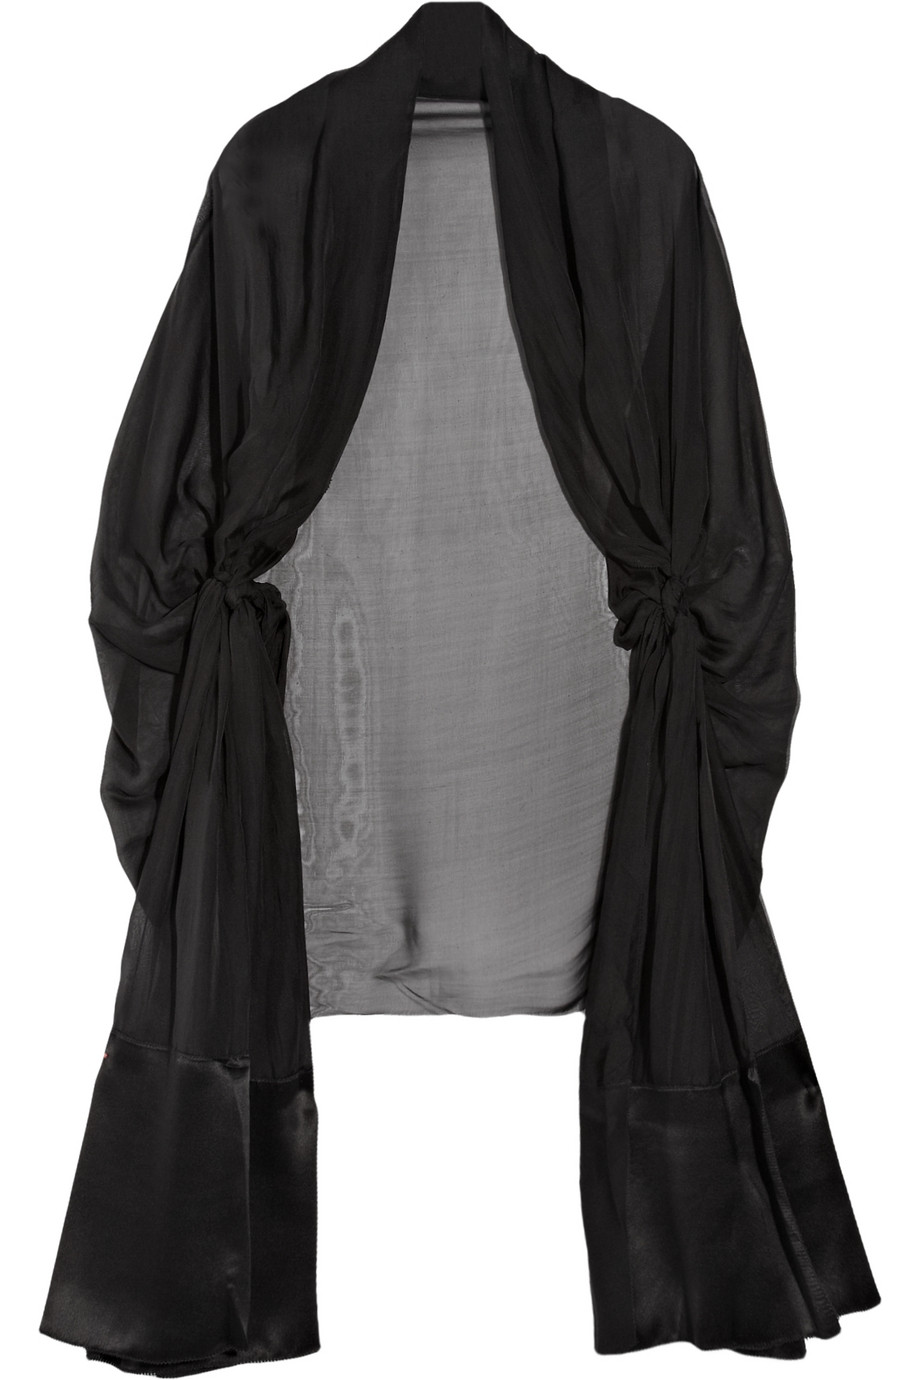 Amanda Wakeley Knotted Silk-chiffon Shrug in Black | Lyst